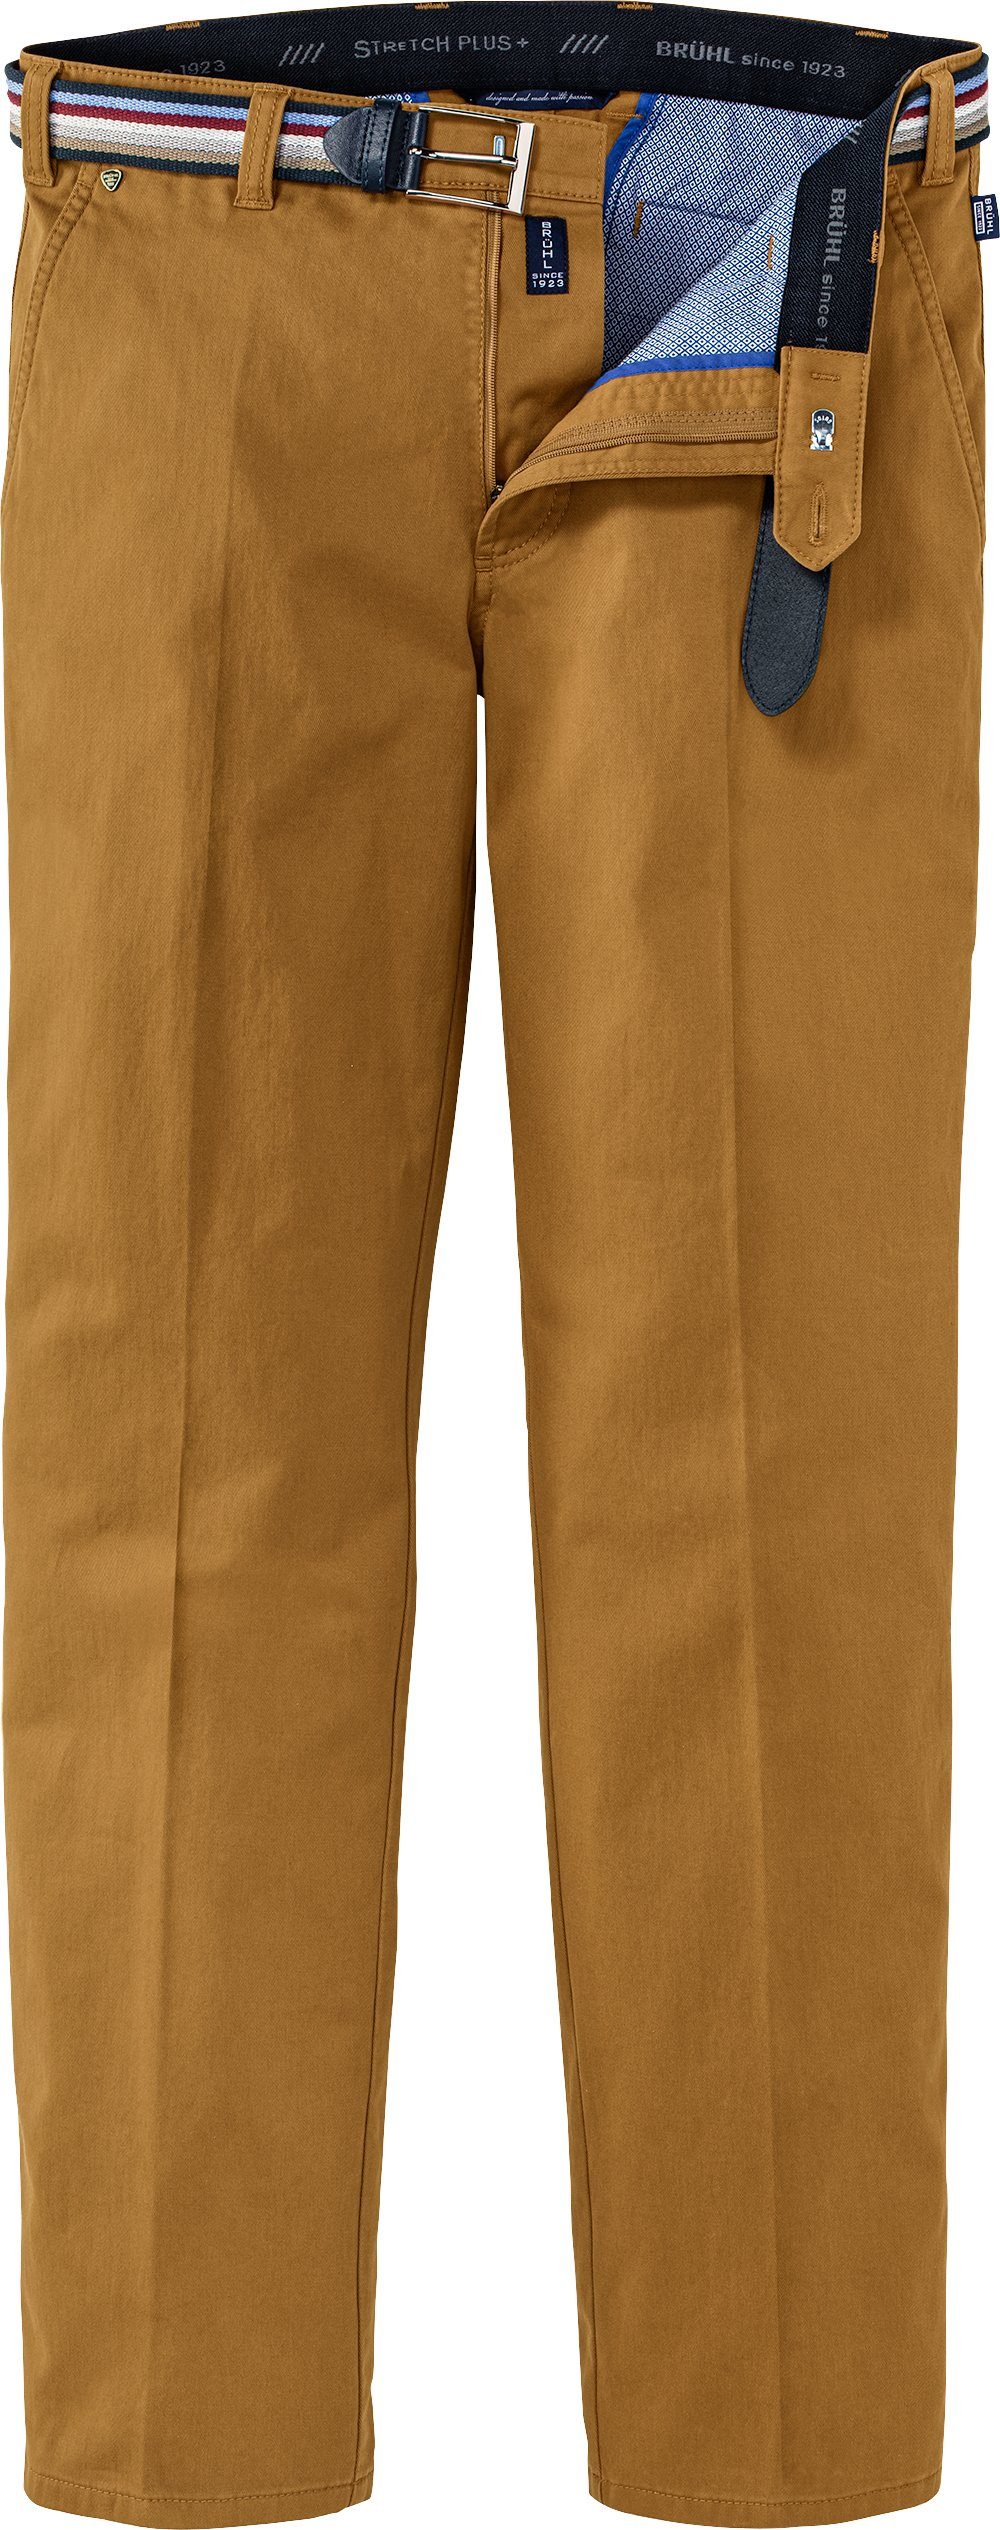 Brühl Stretch-Hose inklusive gelb 4-Jahreszeiten-Modell, Gürtel